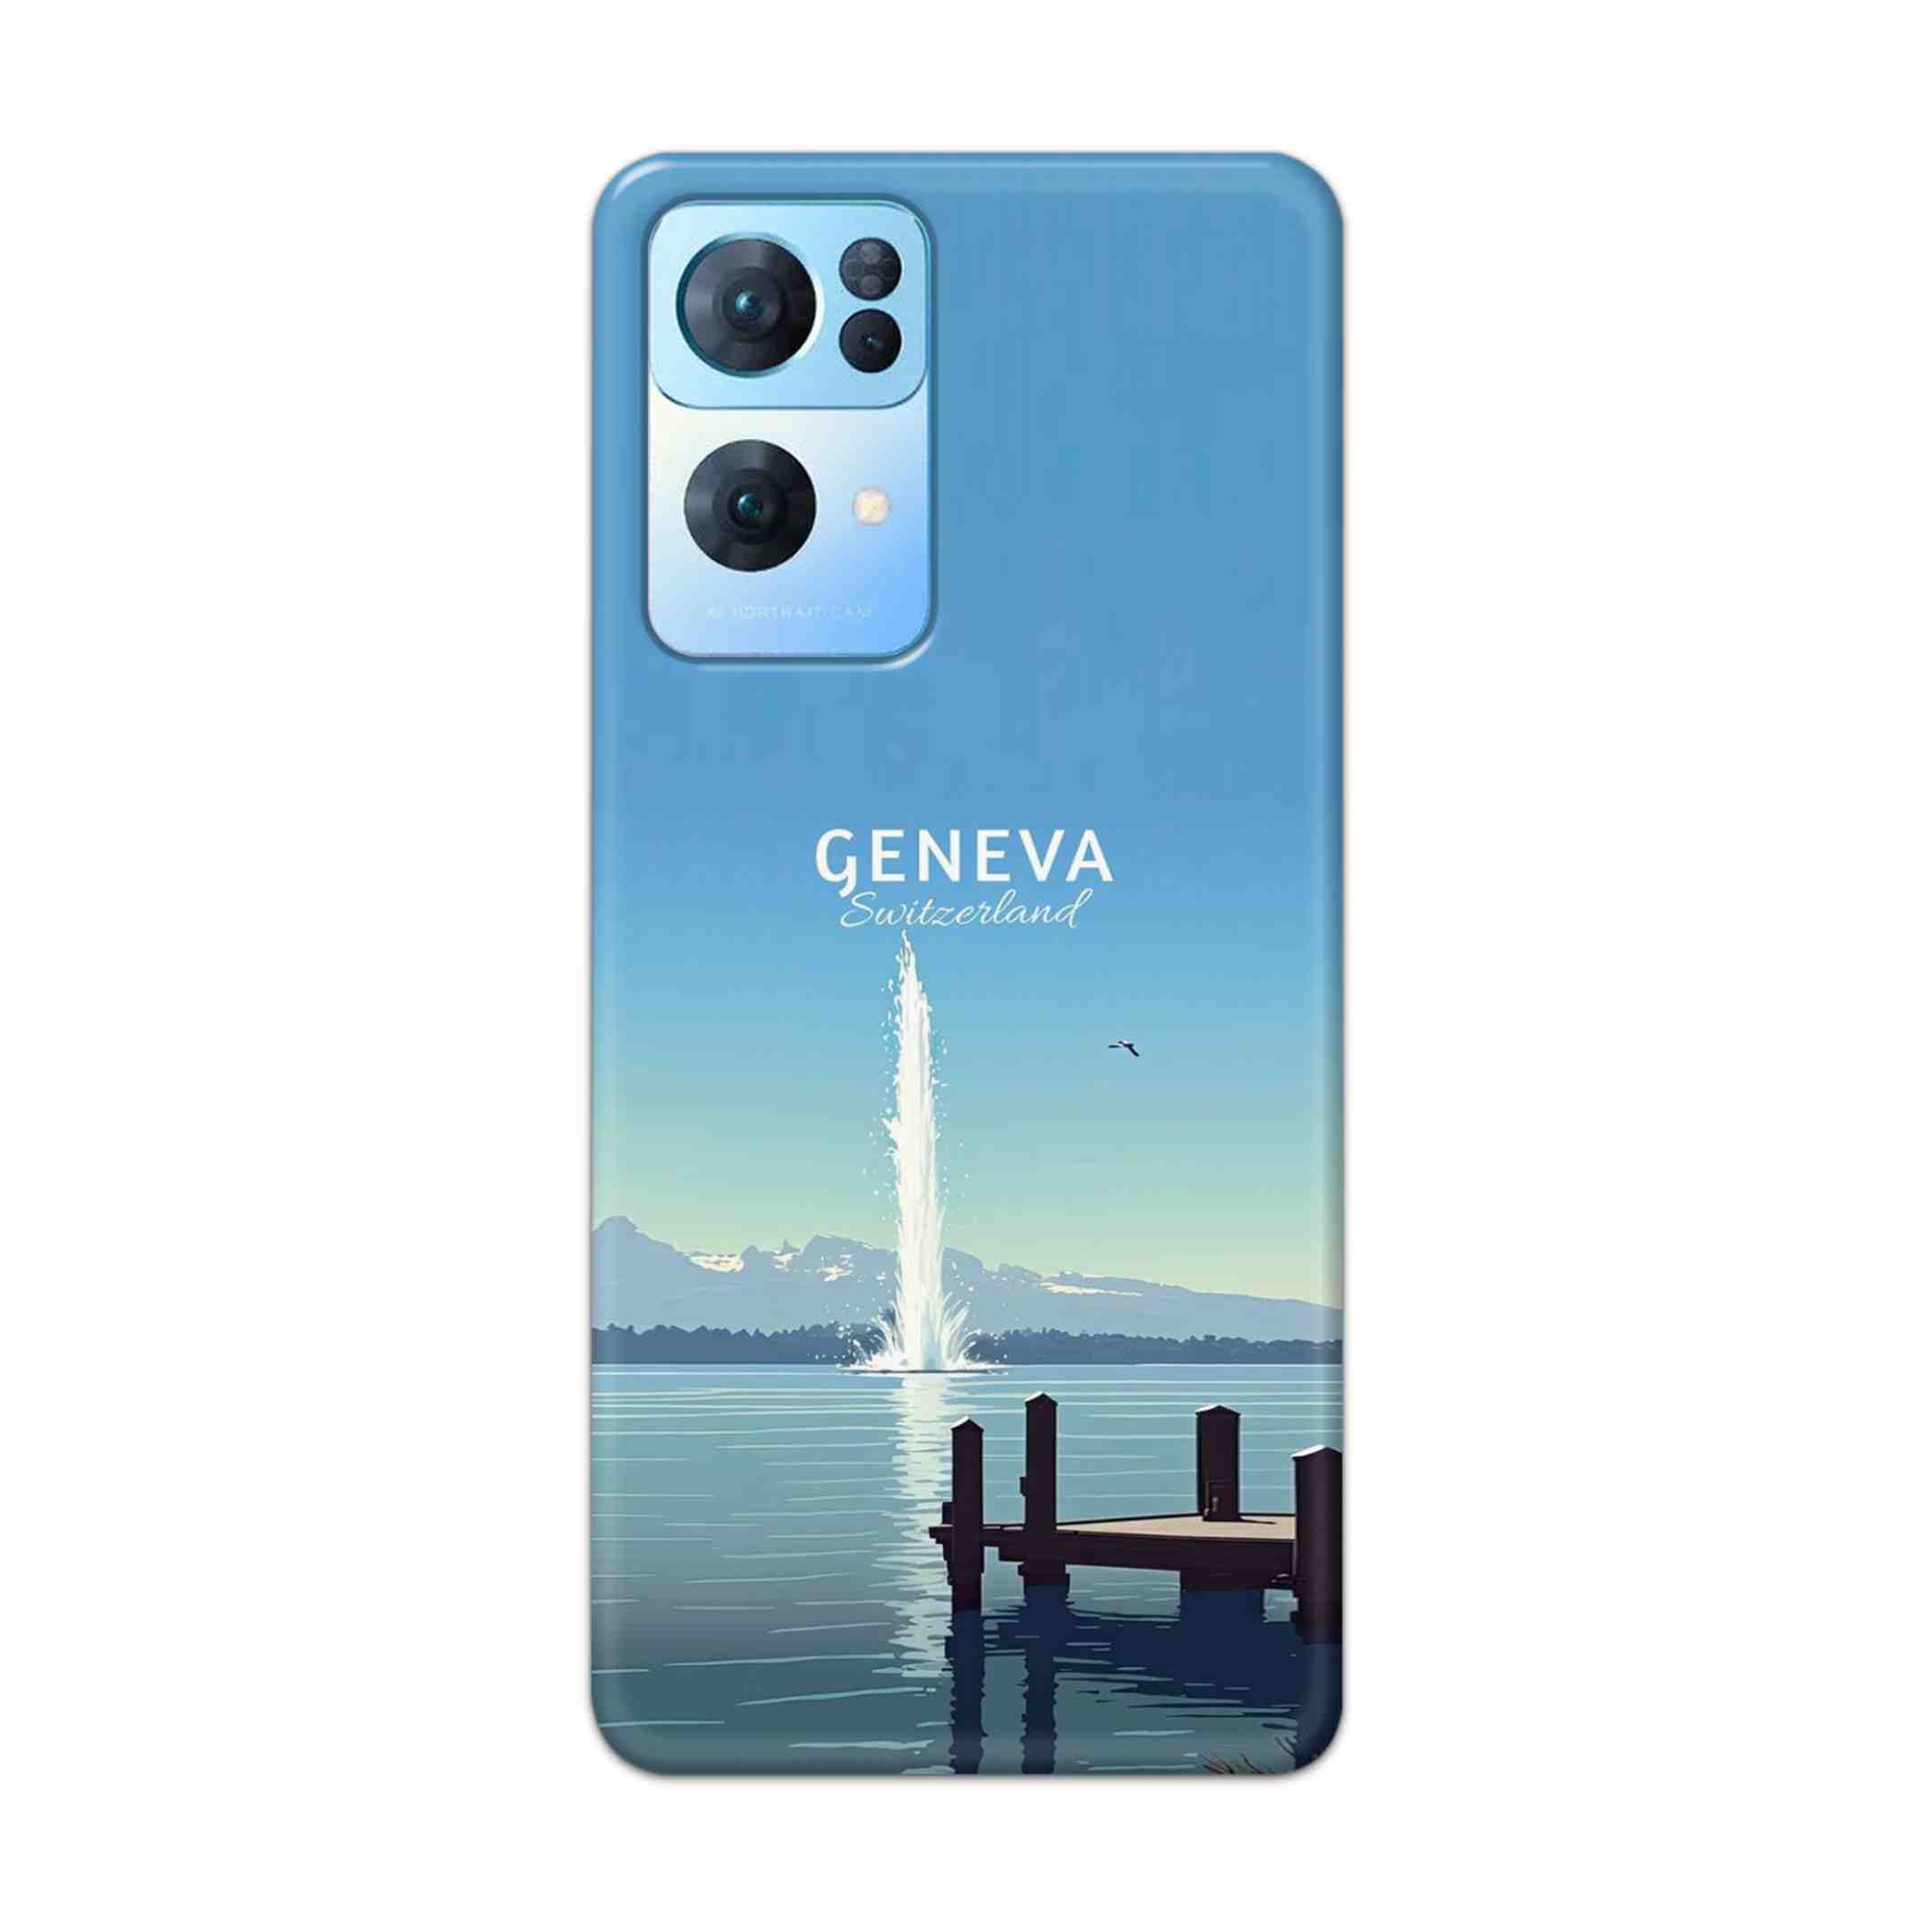 Buy Geneva Hard Back Mobile Phone Case Cover For Oppo Reno 7 Pro Online